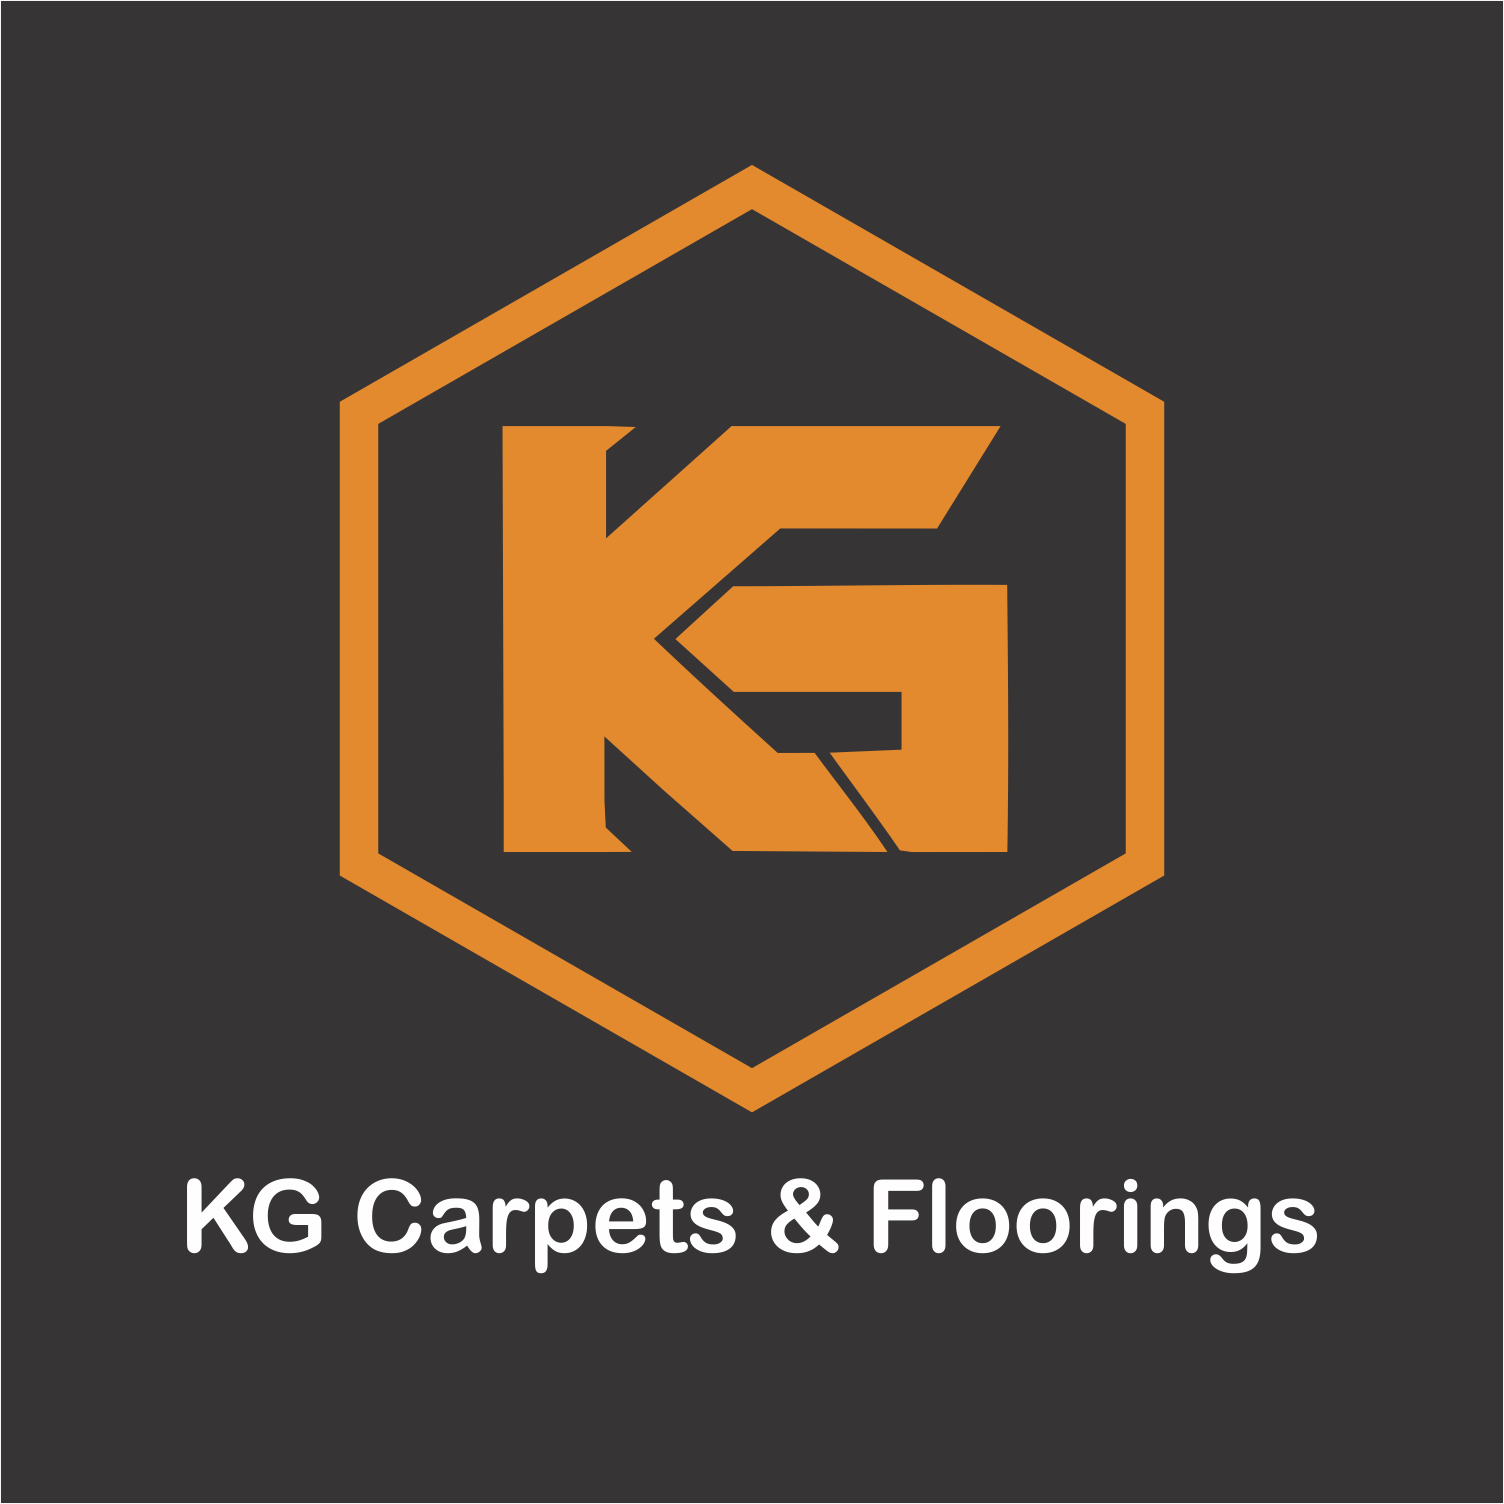 KG Carpets